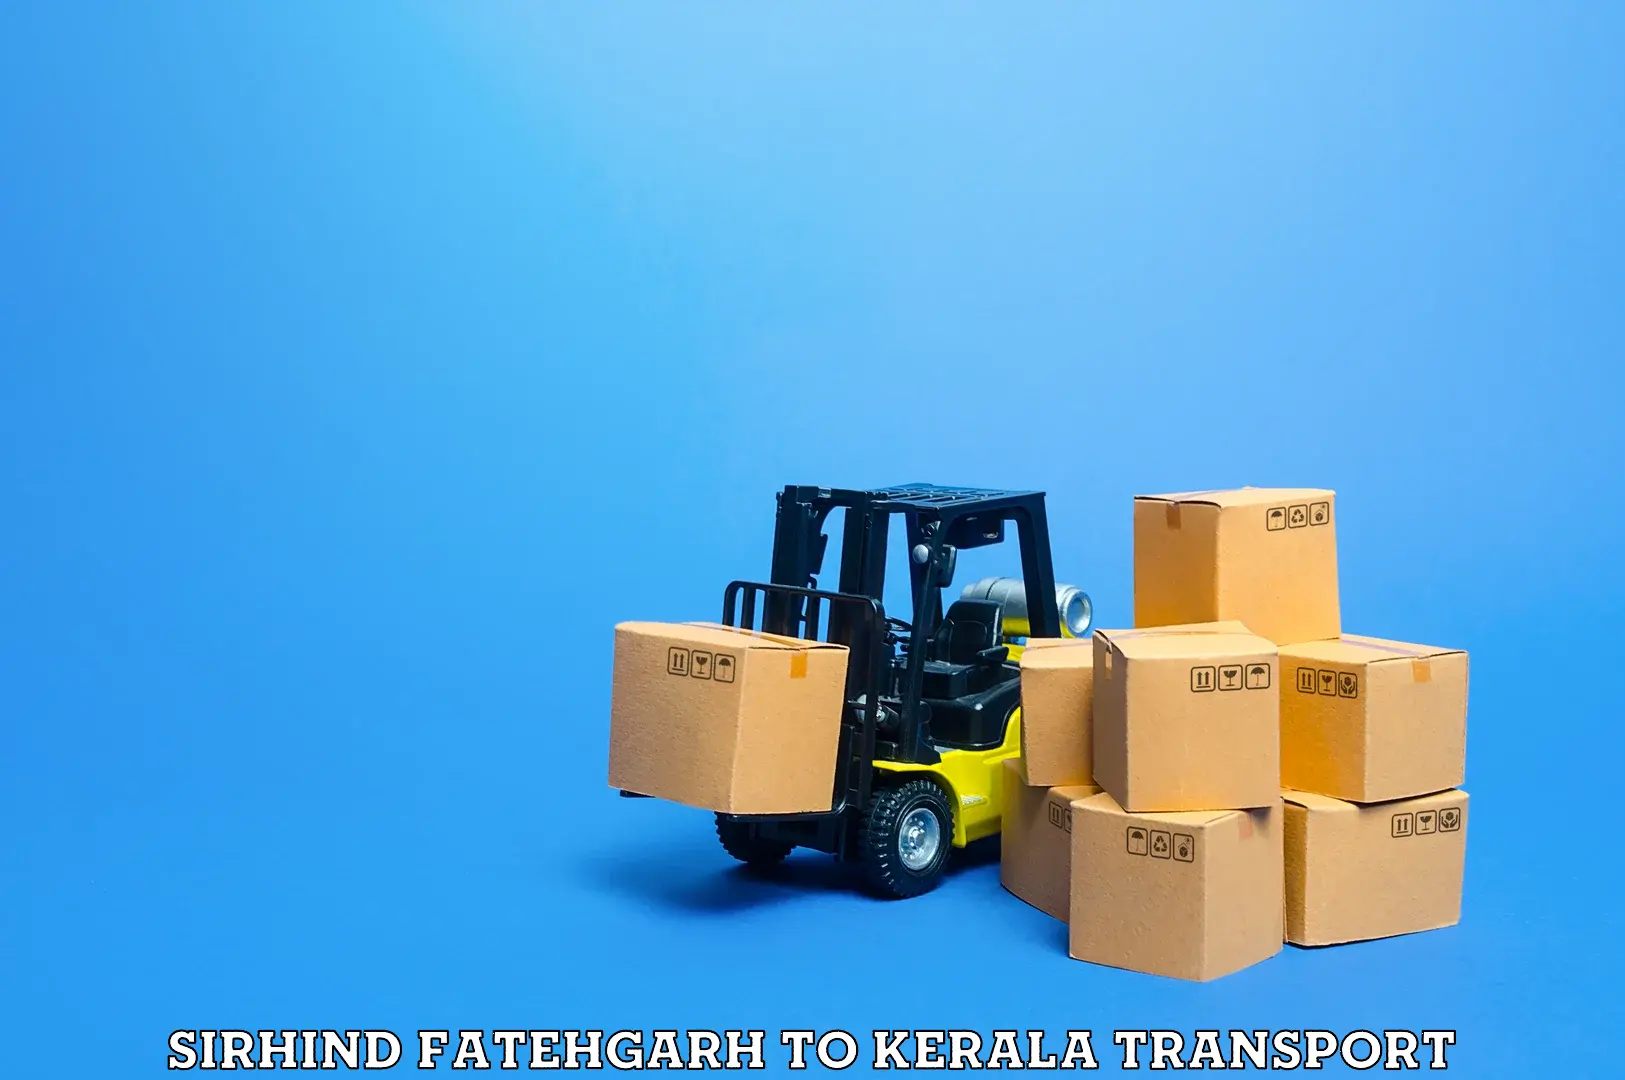 Road transport online services Sirhind Fatehgarh to Kalpetta